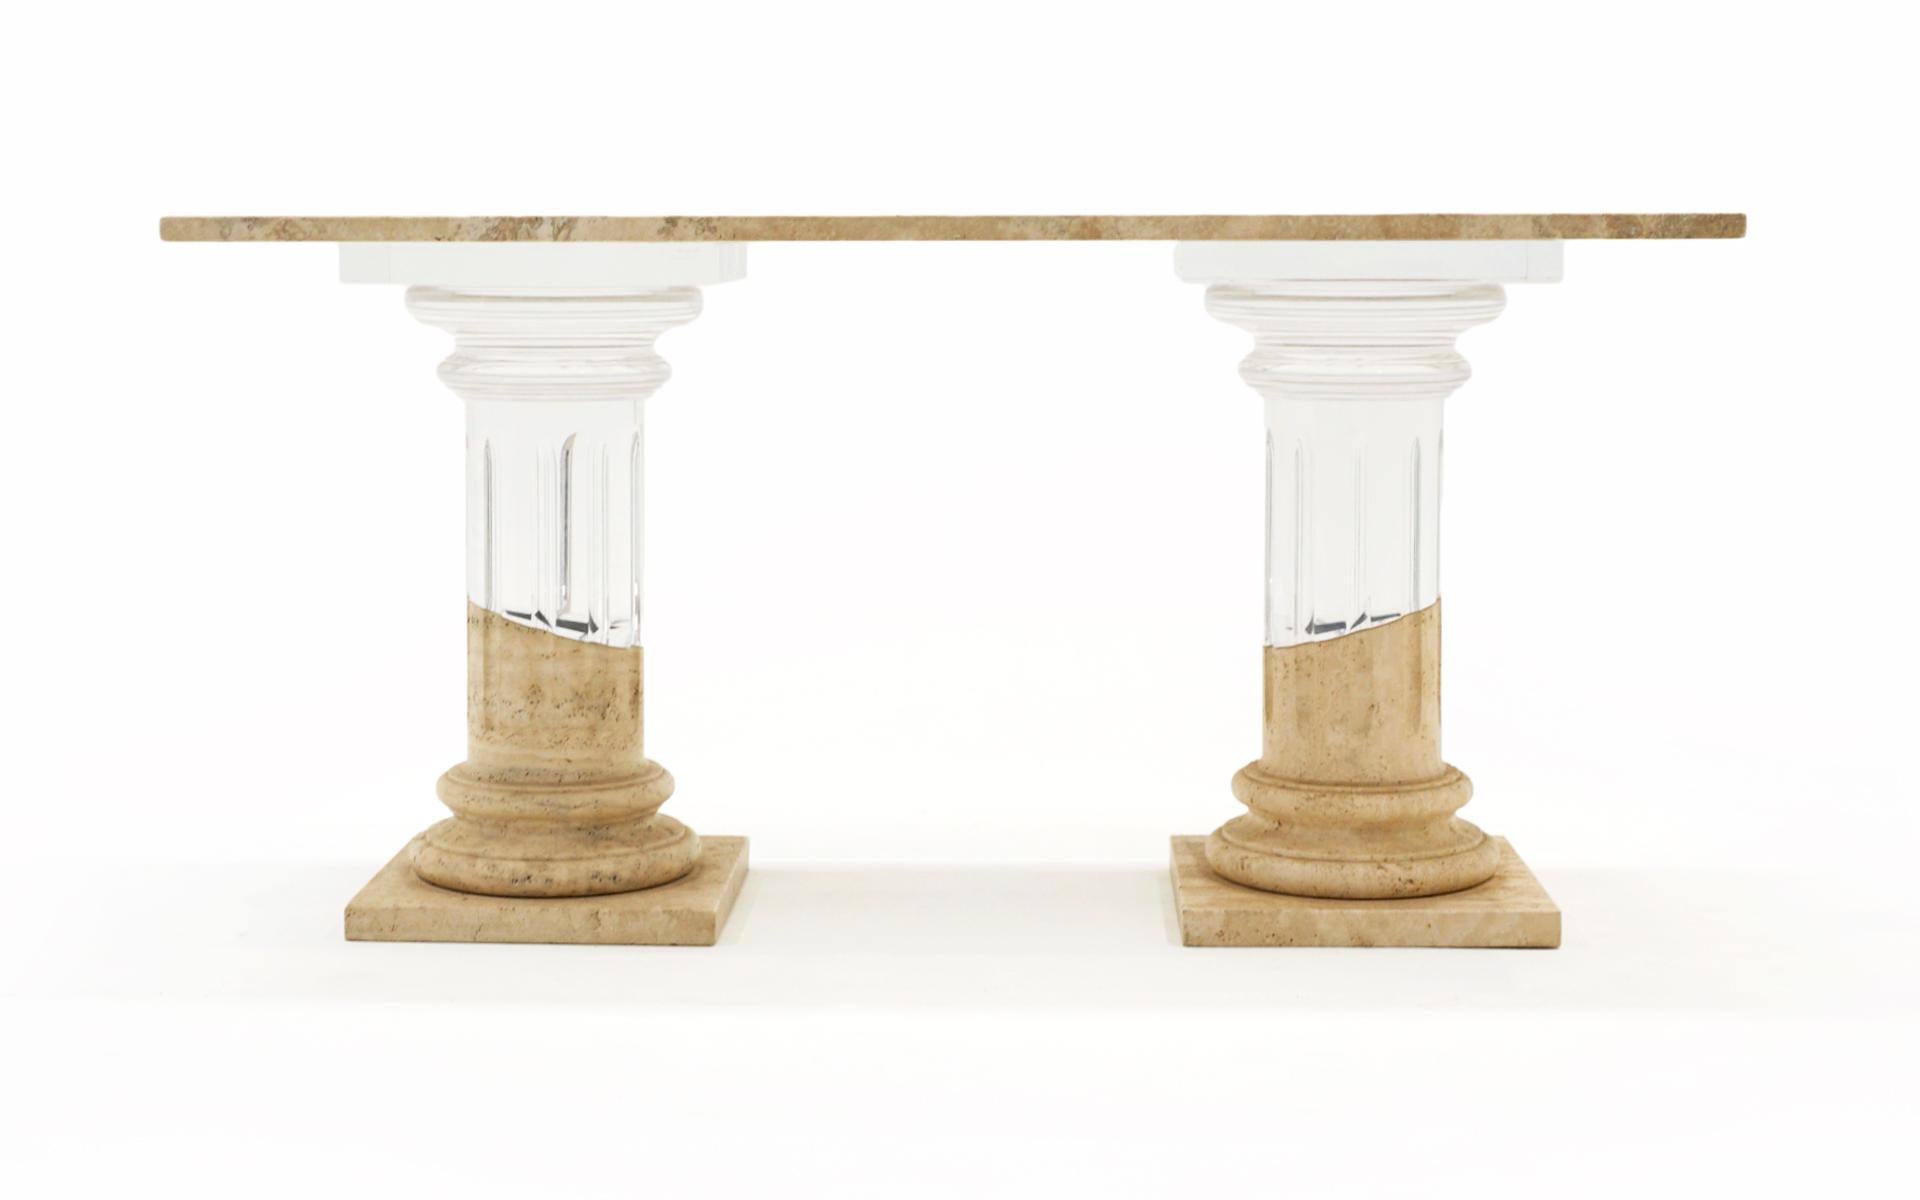 Atemberaubende Konsole / Sofa Tisch in Lucite / Acryl und Travertin.  Die Stützen sind im Stil korinthischer Säulen gehalten, wobei der untere Teil aus massivem Travertin und der obere Teil aus massivem Acryl besteht.   Das Acryl verbindet sich mit